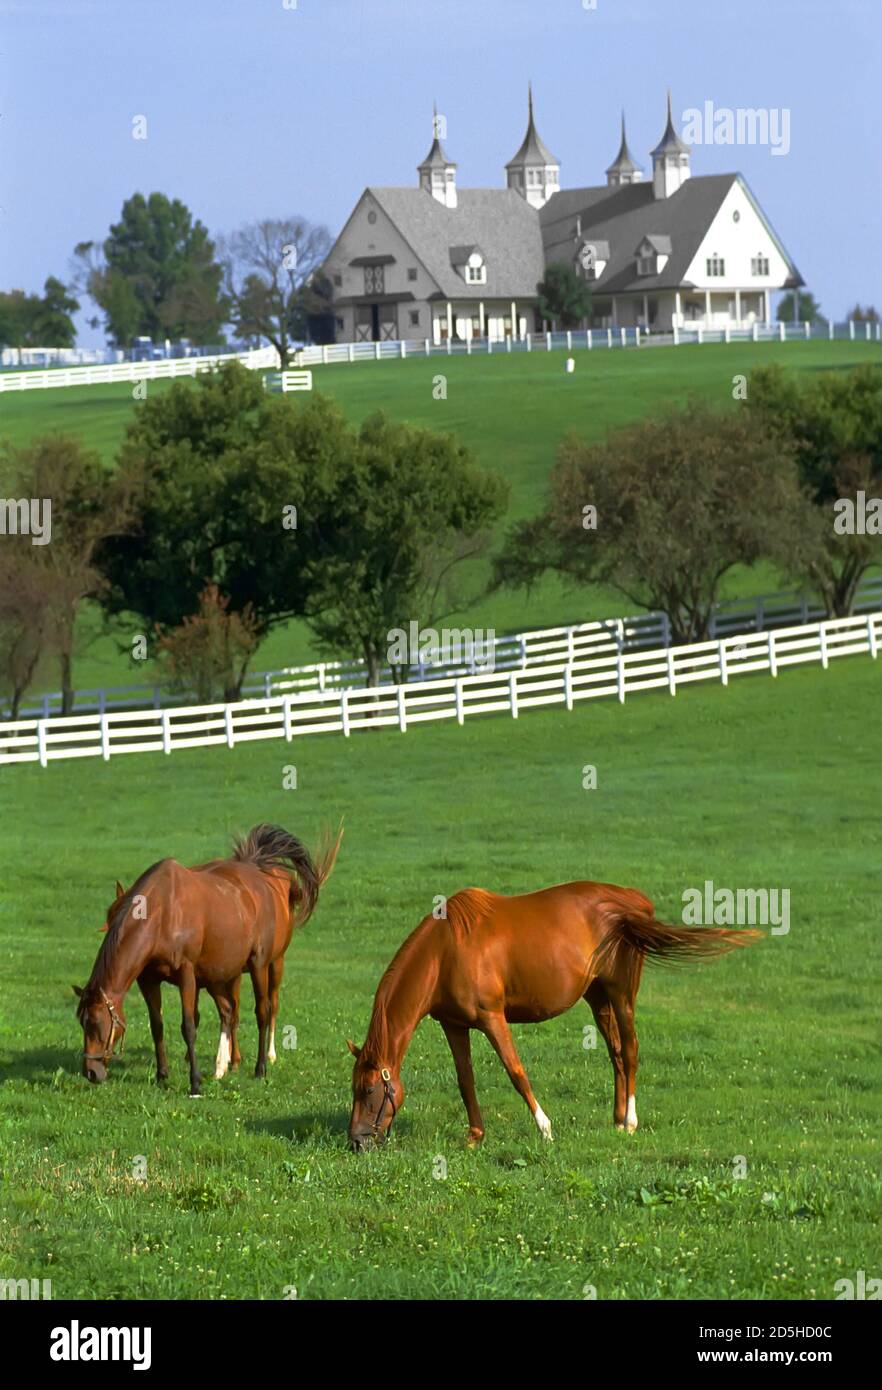 Lexington Kentucky horse farm Stock Photo